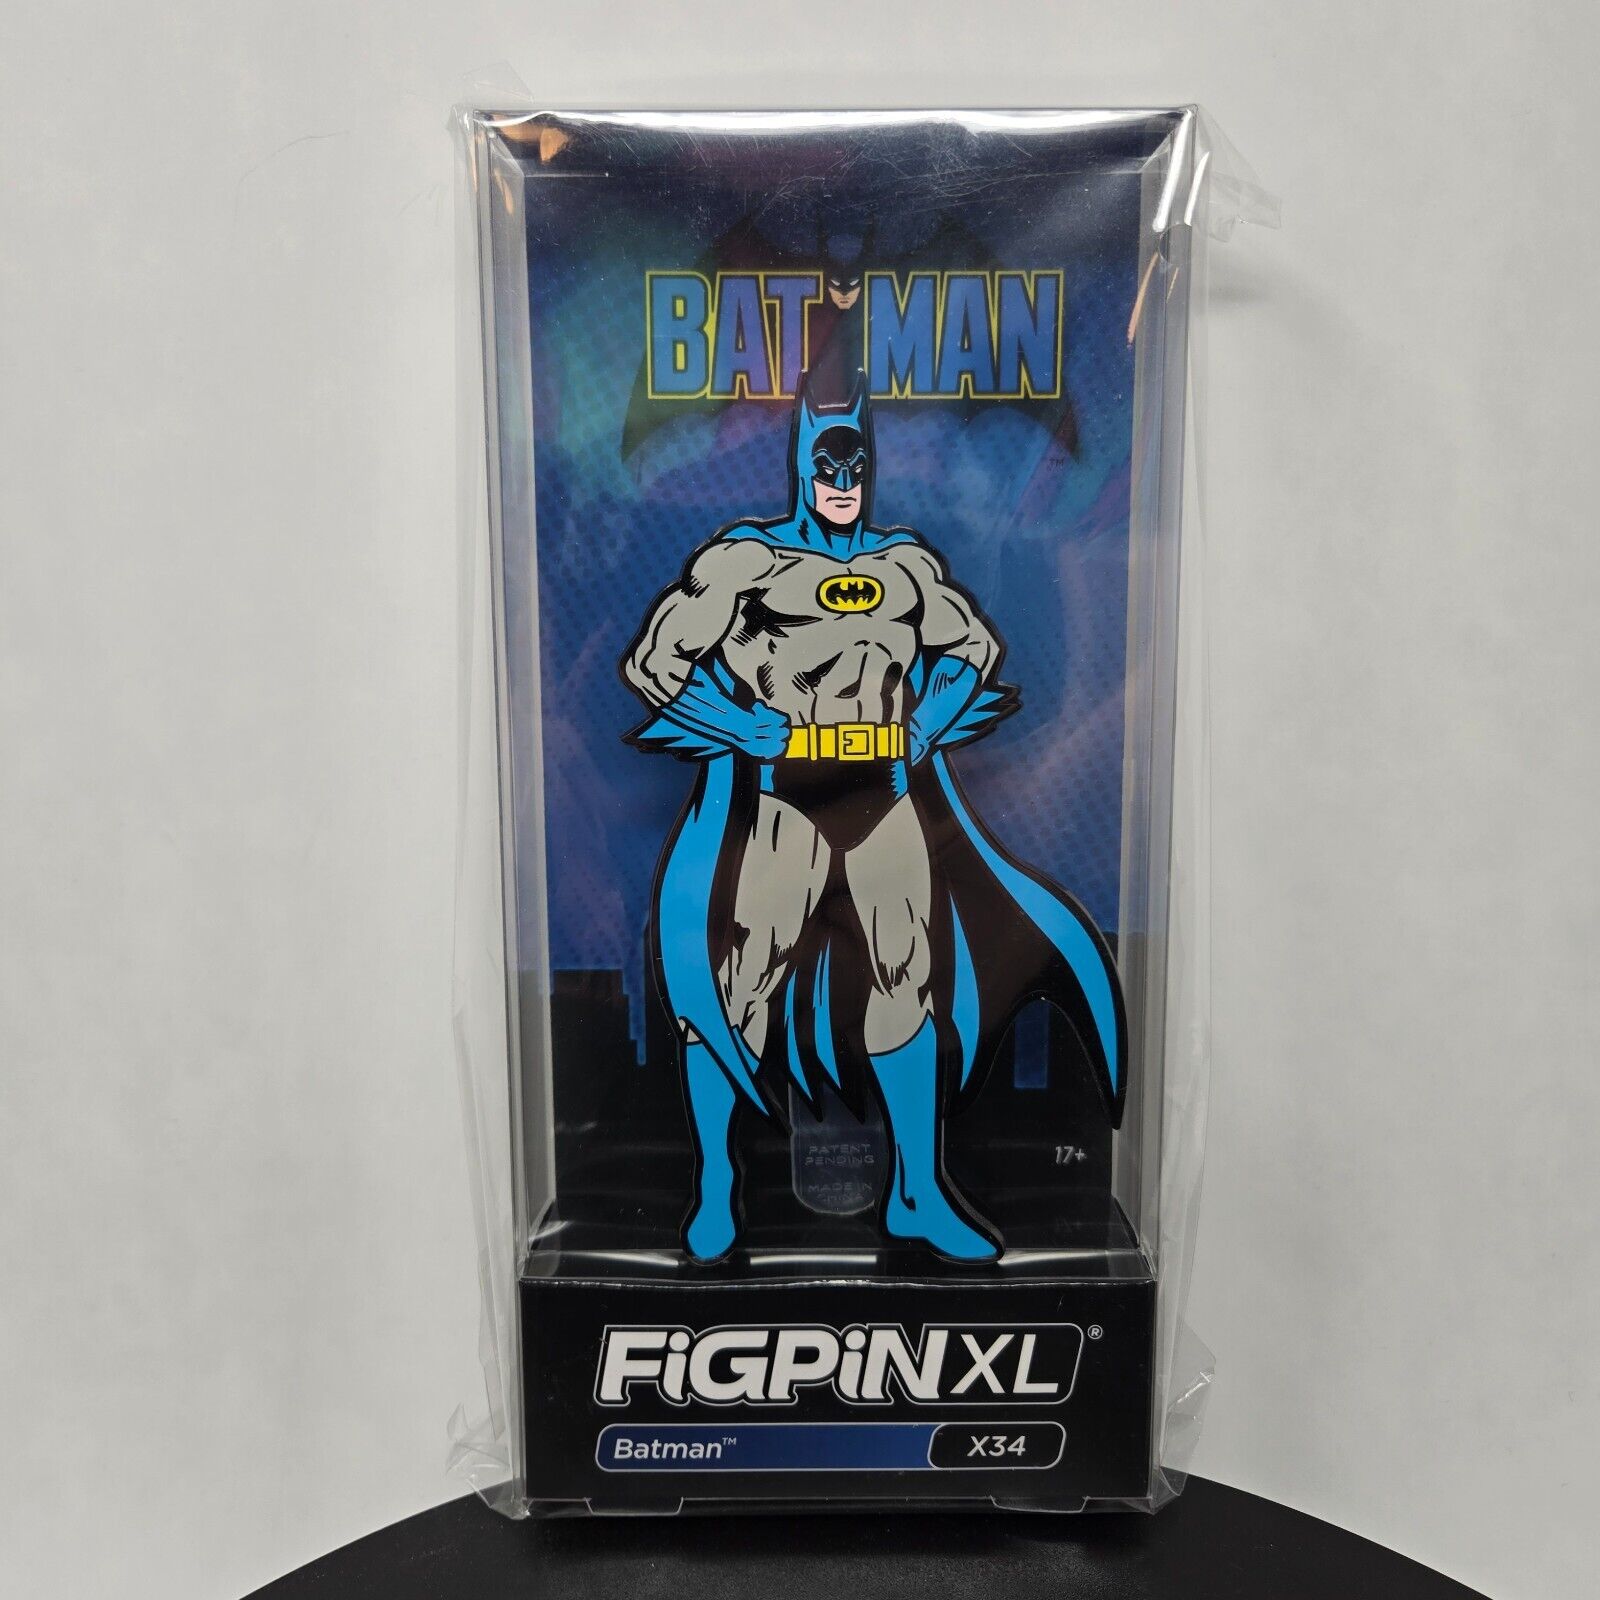 Batman FiGPiN XL X34 Exclusive NEW